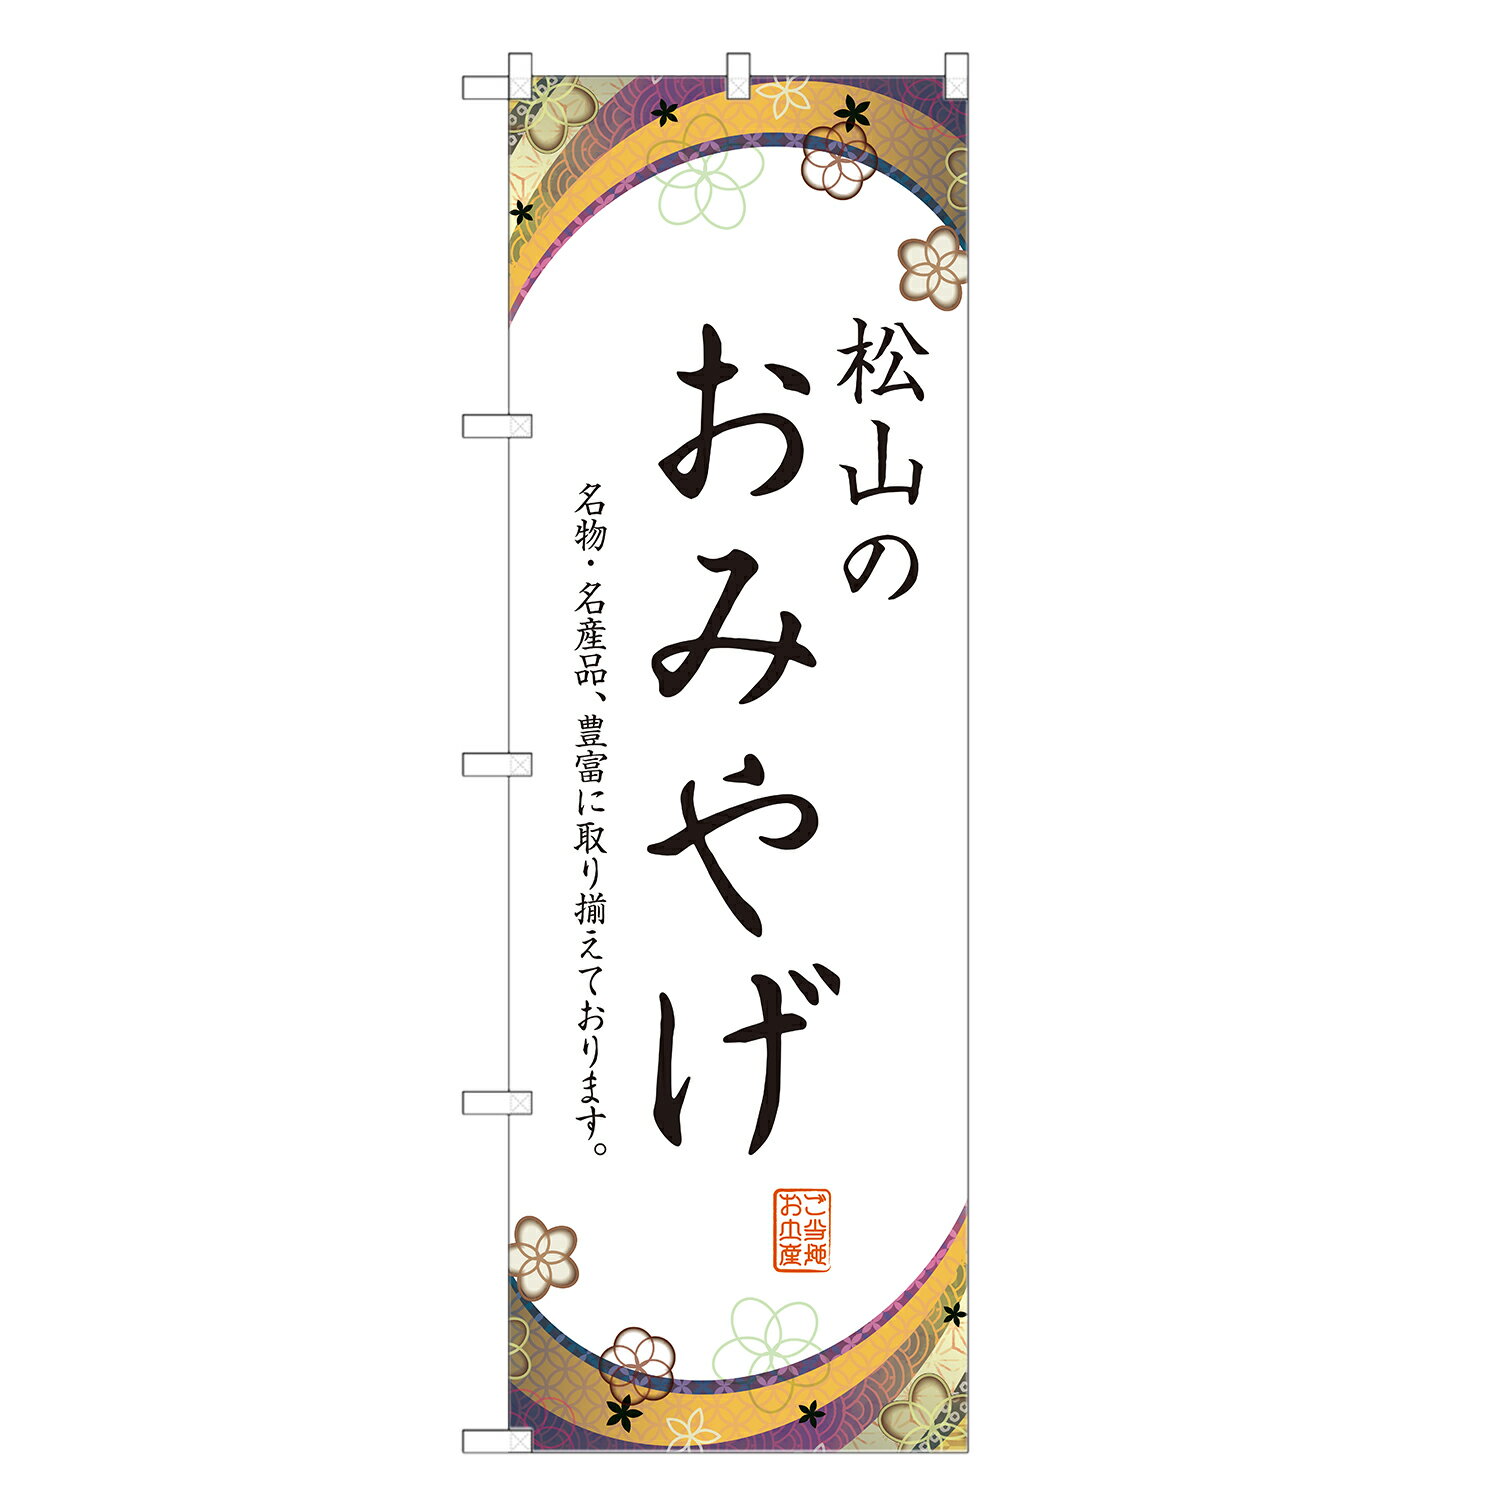 のぼり旗 松山のお土産 のぼり 四方三巻縫製 T09-0955A-R